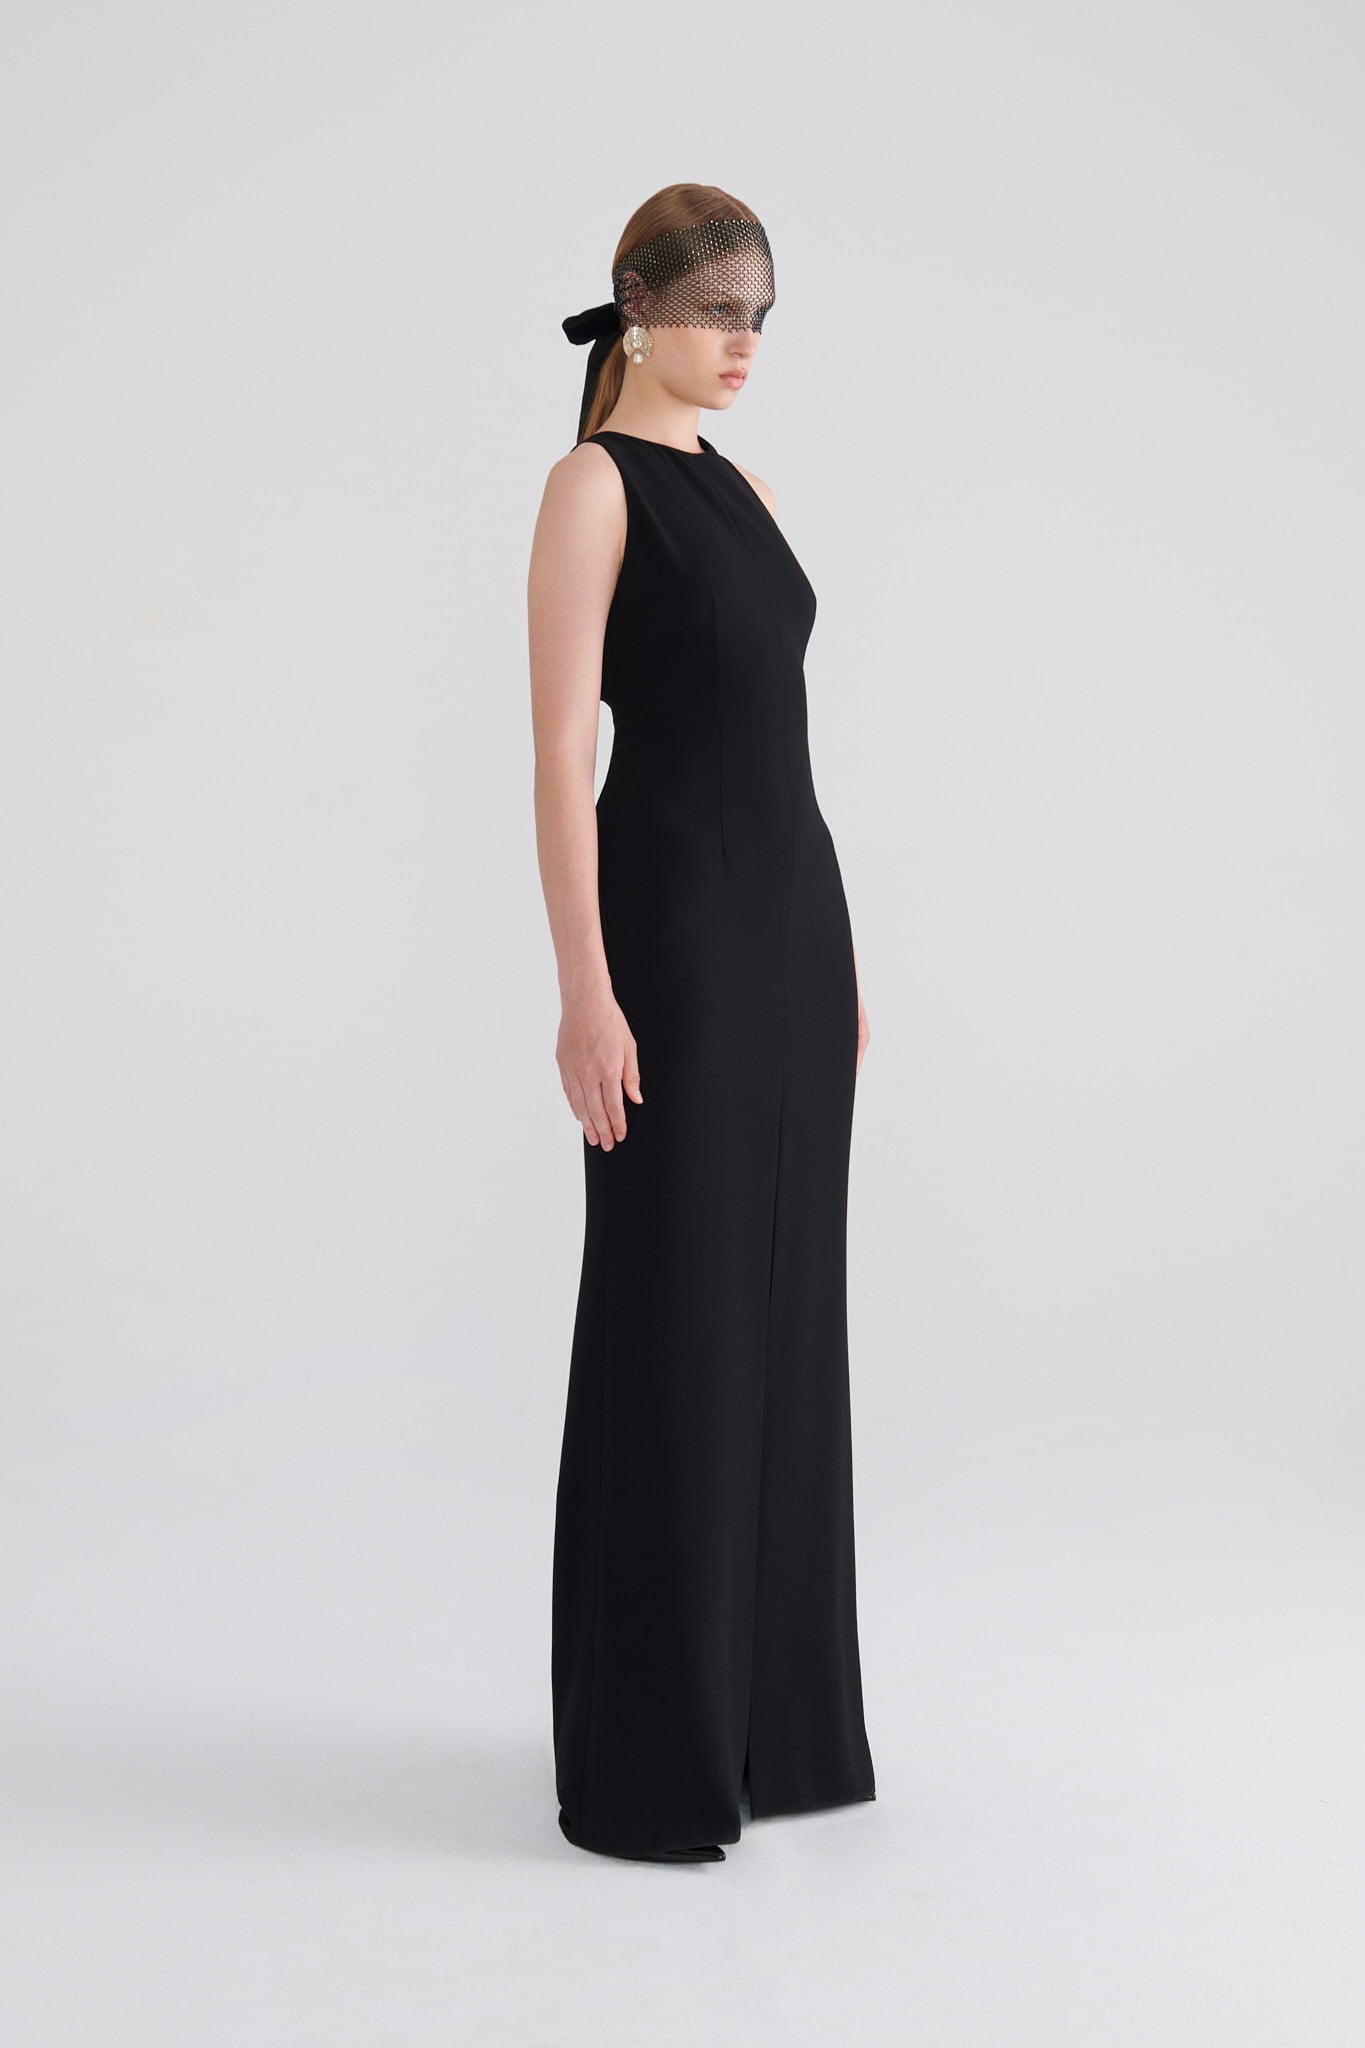 Elegant Backless Black Evening Dress --[BLACK]